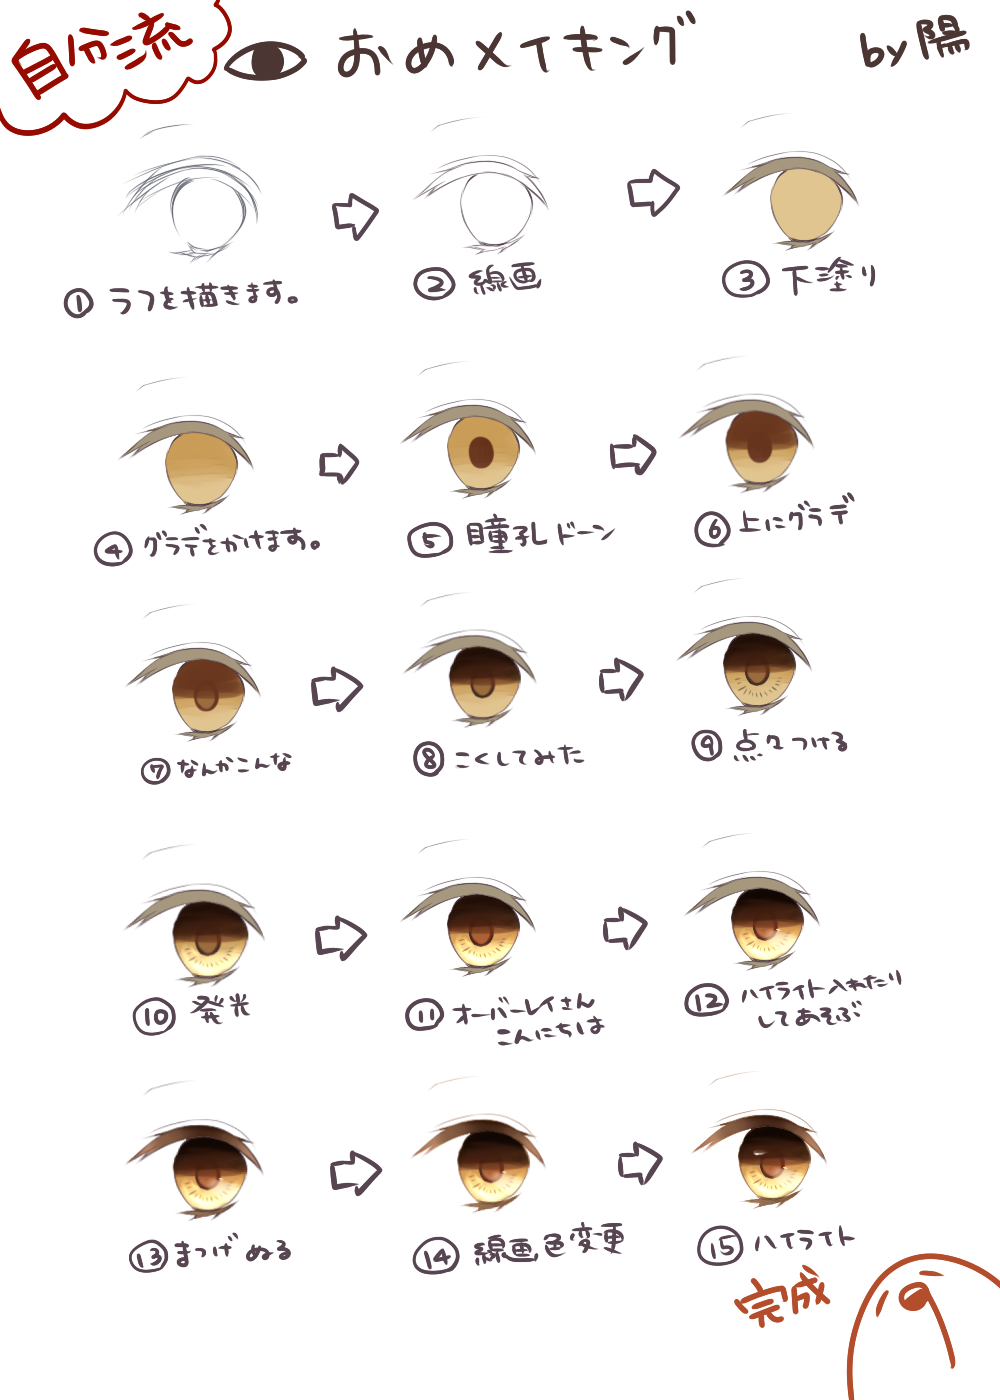 眼睛化妆-作画过程眼睛